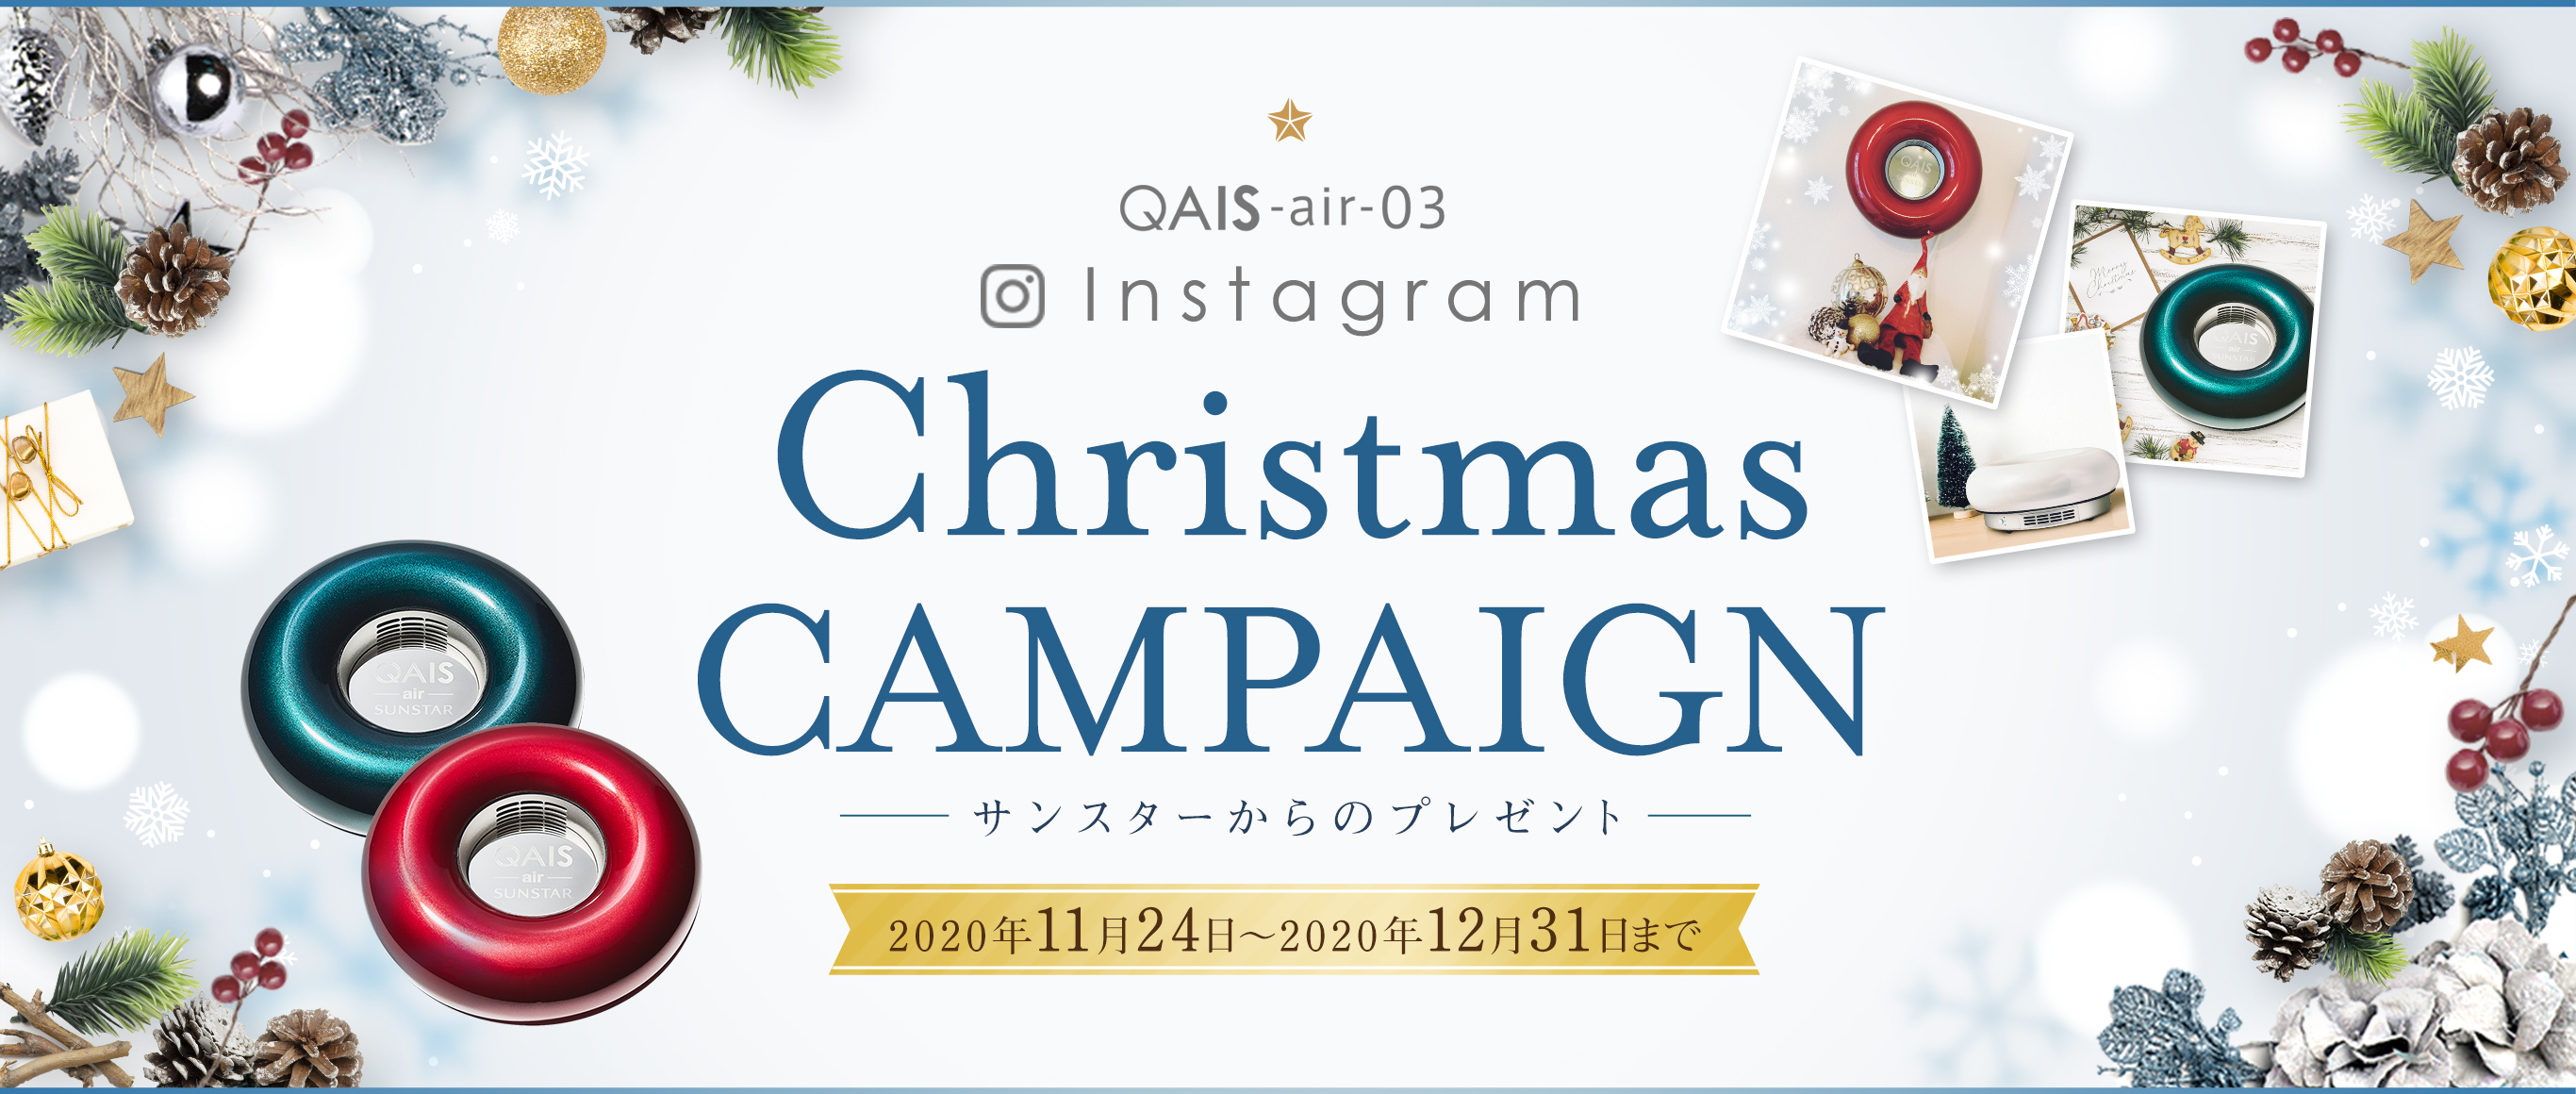 QAIS -air- 03 Instagram クリスマスキャンペーン